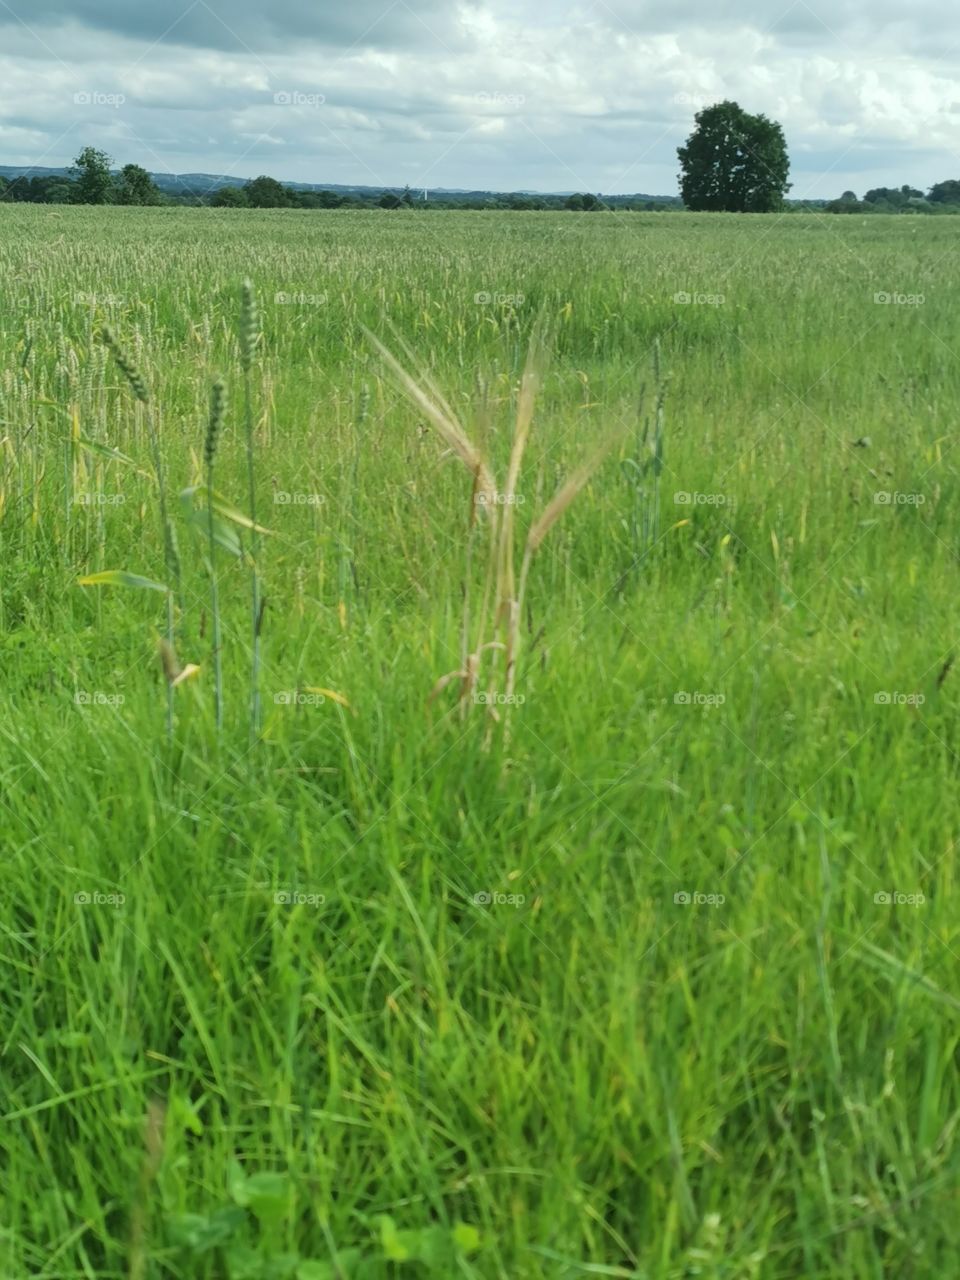 Barley in wheat field